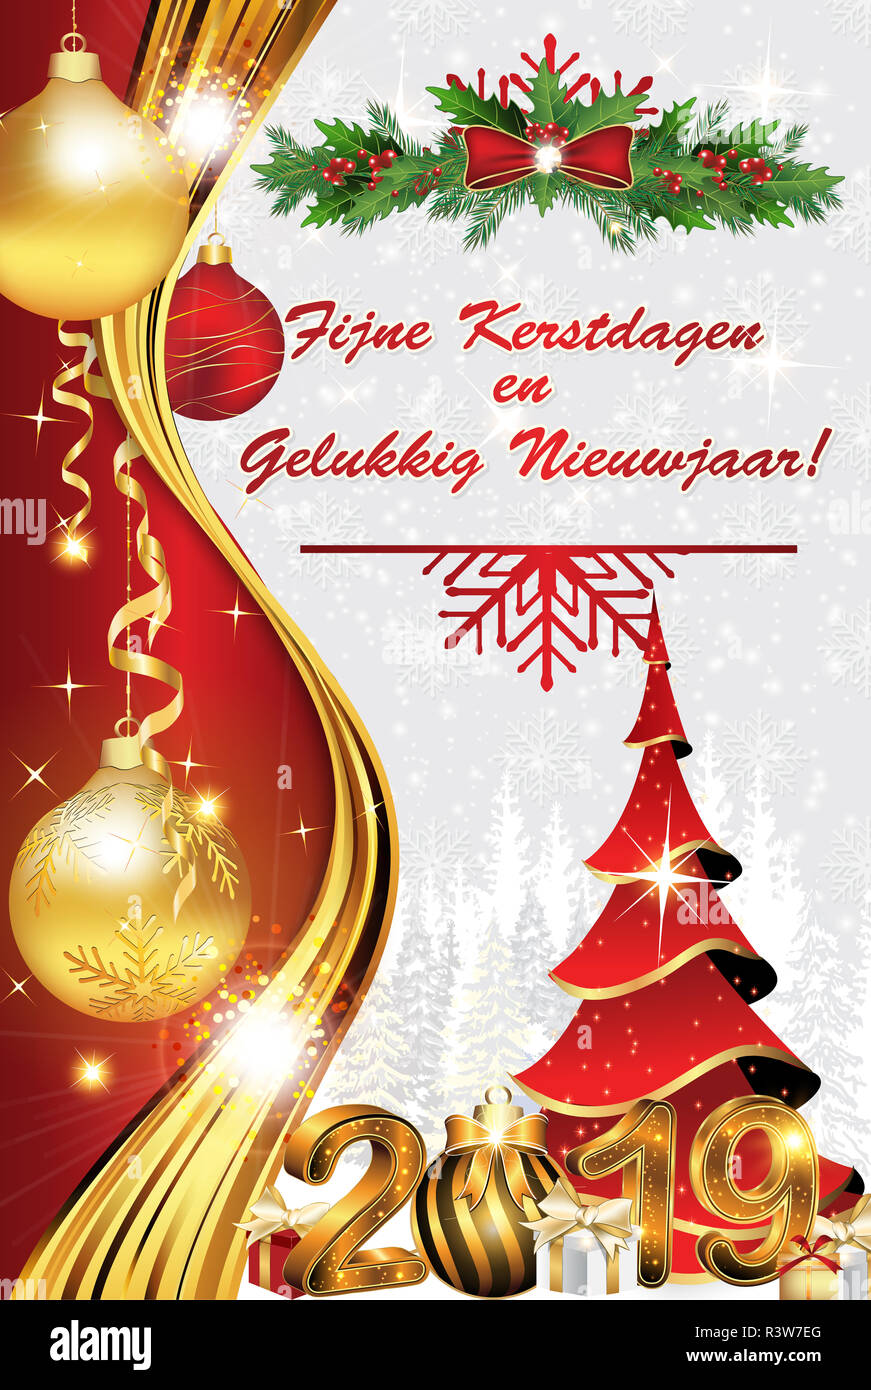 Buon Natale Olandese.Auguriamo A Tutti Un Buon Natale E Un Felice Anno Nuovo 2019 Scritto In Olandese Il Messaggio Di Saluto Aziendale Card Per La Stagione Delle Vacanze Foto Stock Alamy